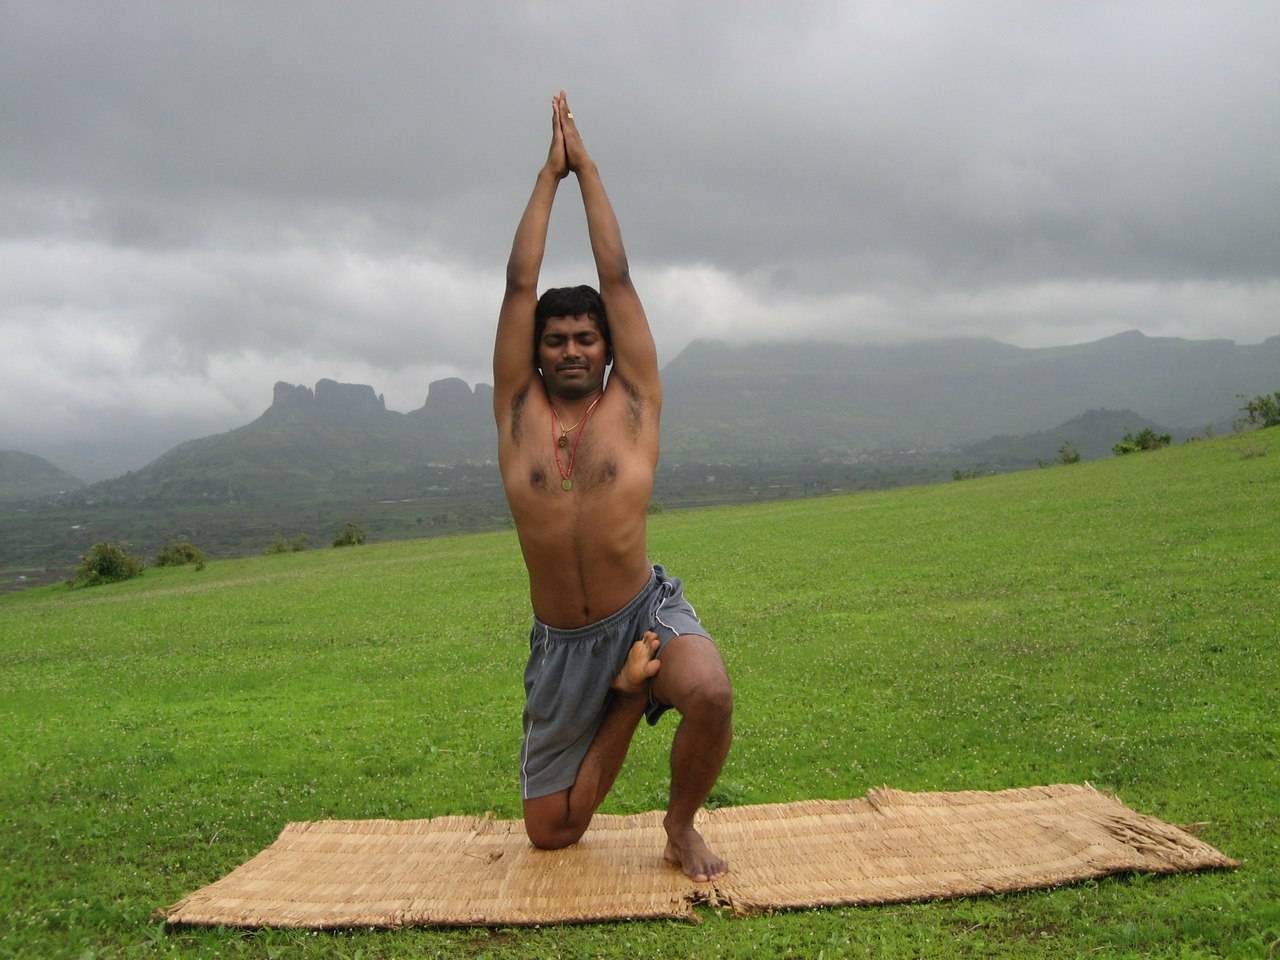 Раджа-йога